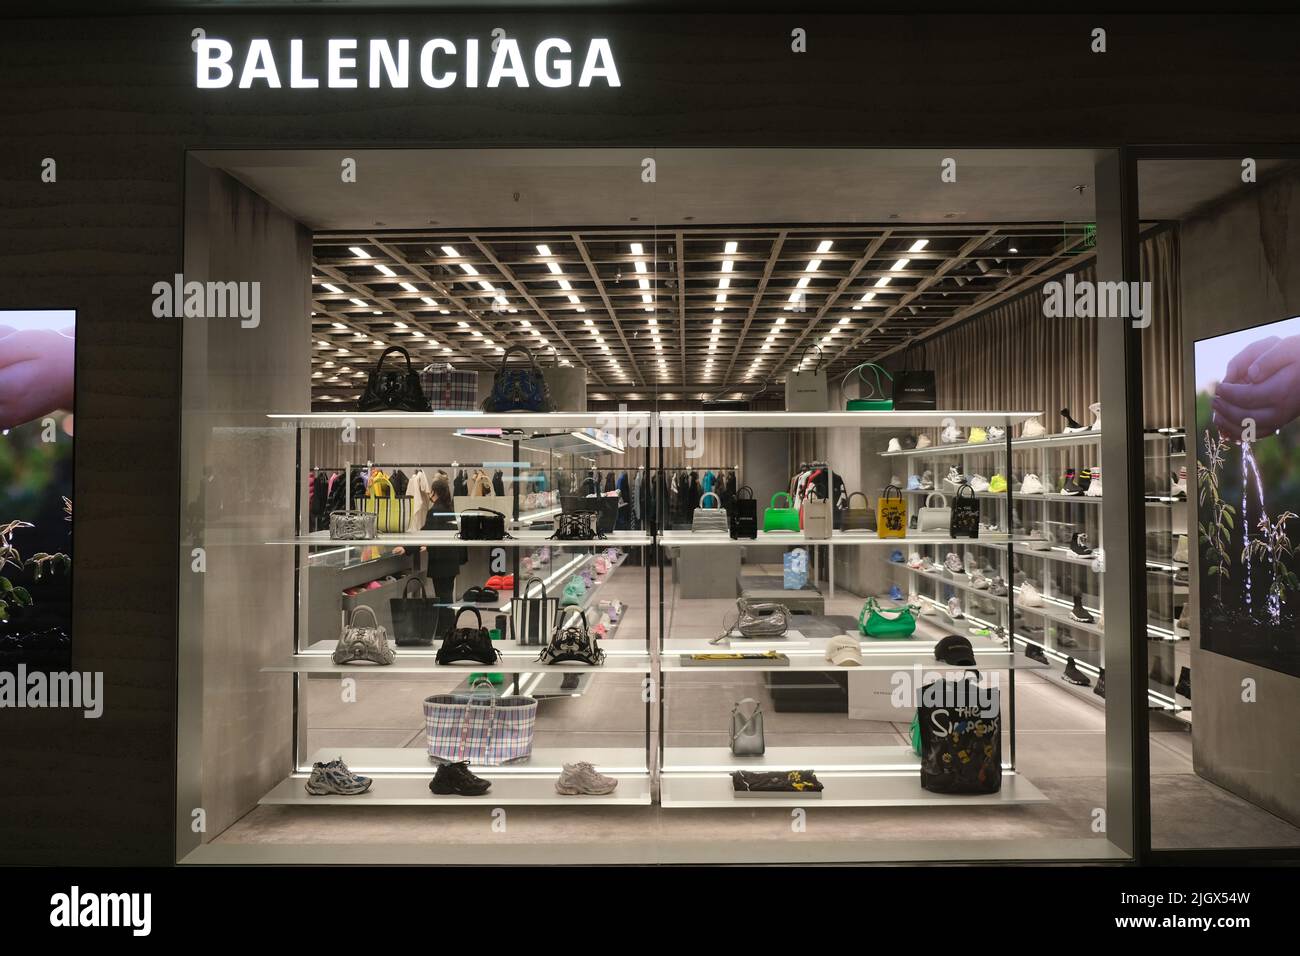 Magasin balenciaga Banque de photographies et d'images à haute résolution -  Alamy